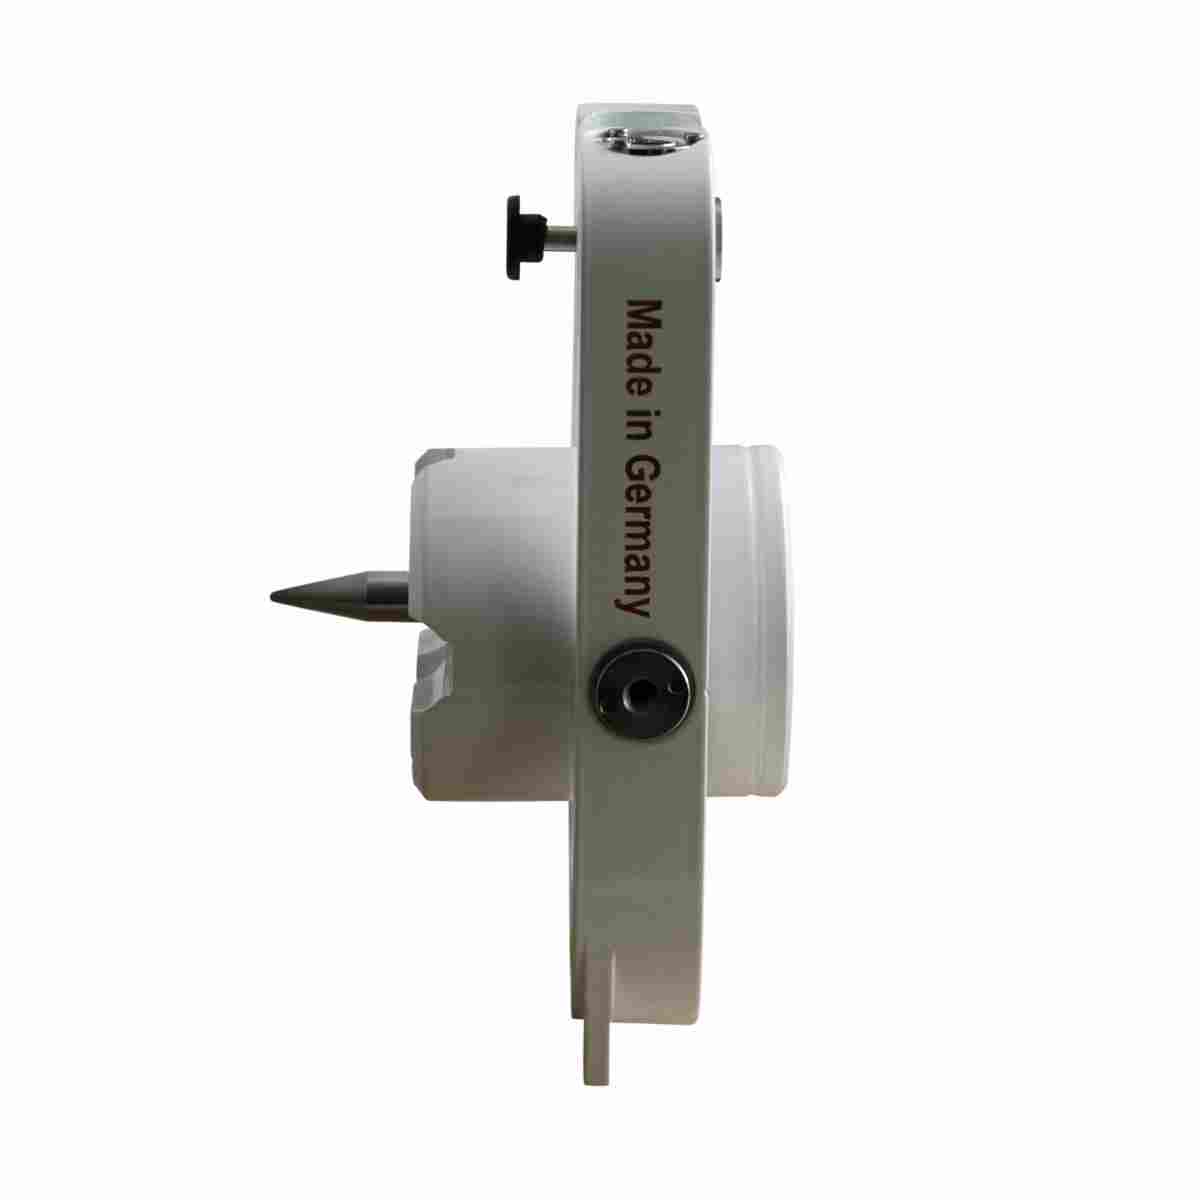 Metallprisma GPR-SE "Leica" mit Spitze, Libelle und Absteckspitze